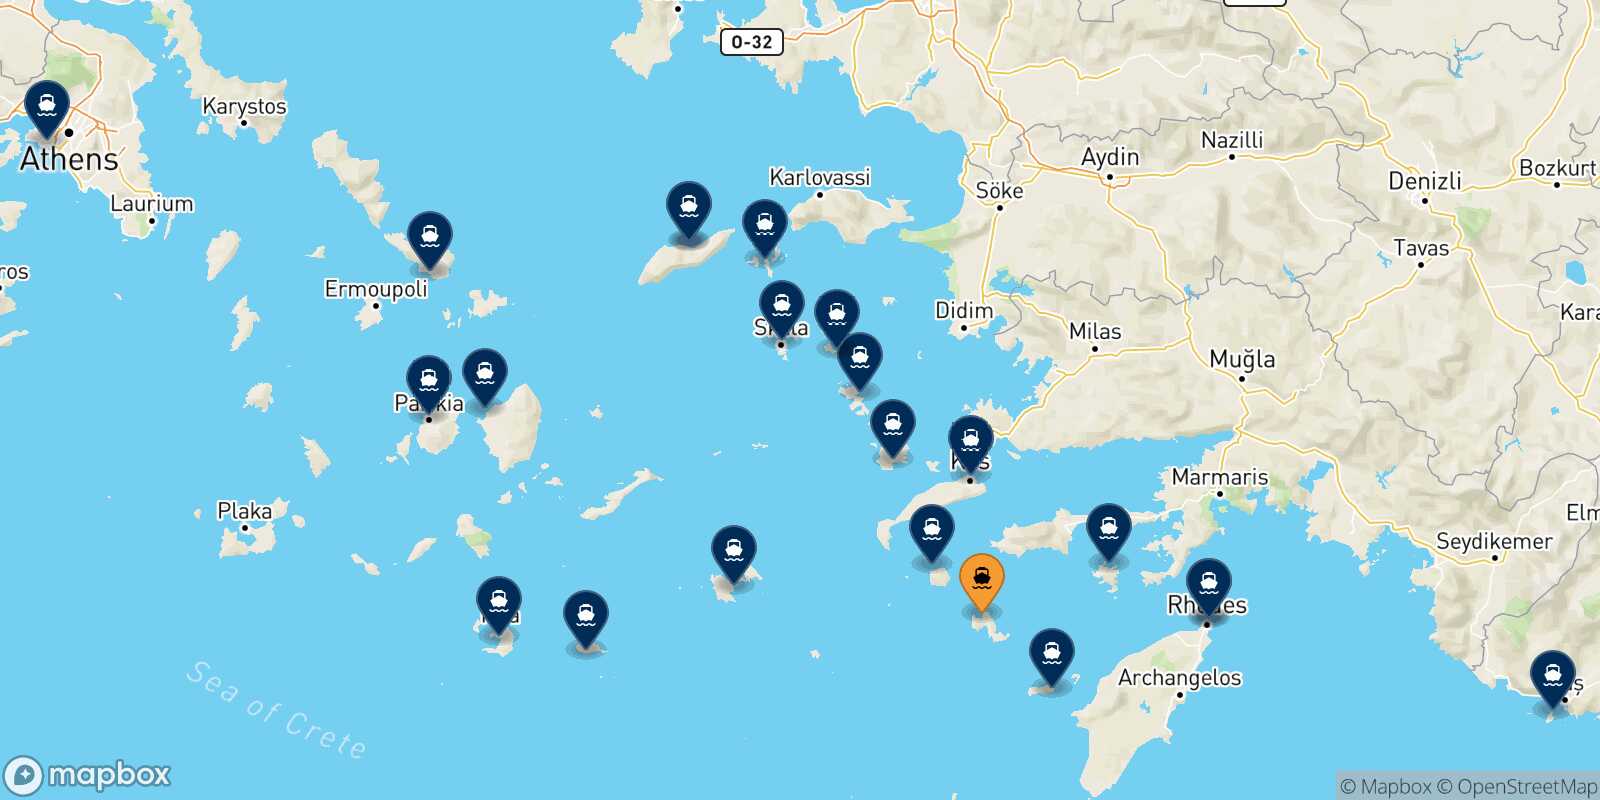 Mappa delle destinazioni raggiungibili da Tilos